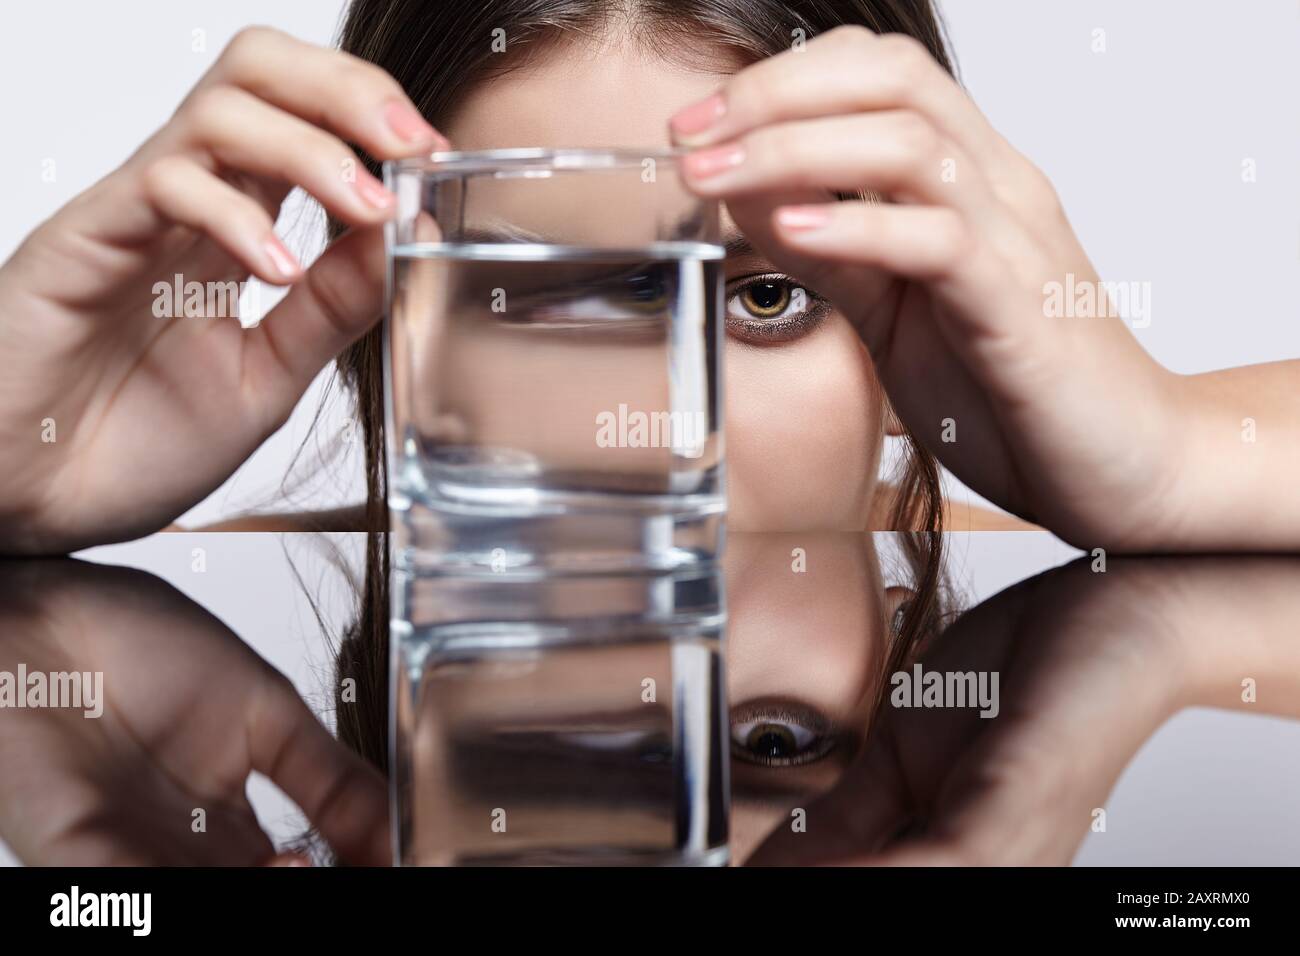 Fille cache son visage derrière un verre avec de l'eau. Portrait de distorsion optique de la jeune femme à la table miroir. Femme sur fond gris. Banque D'Images